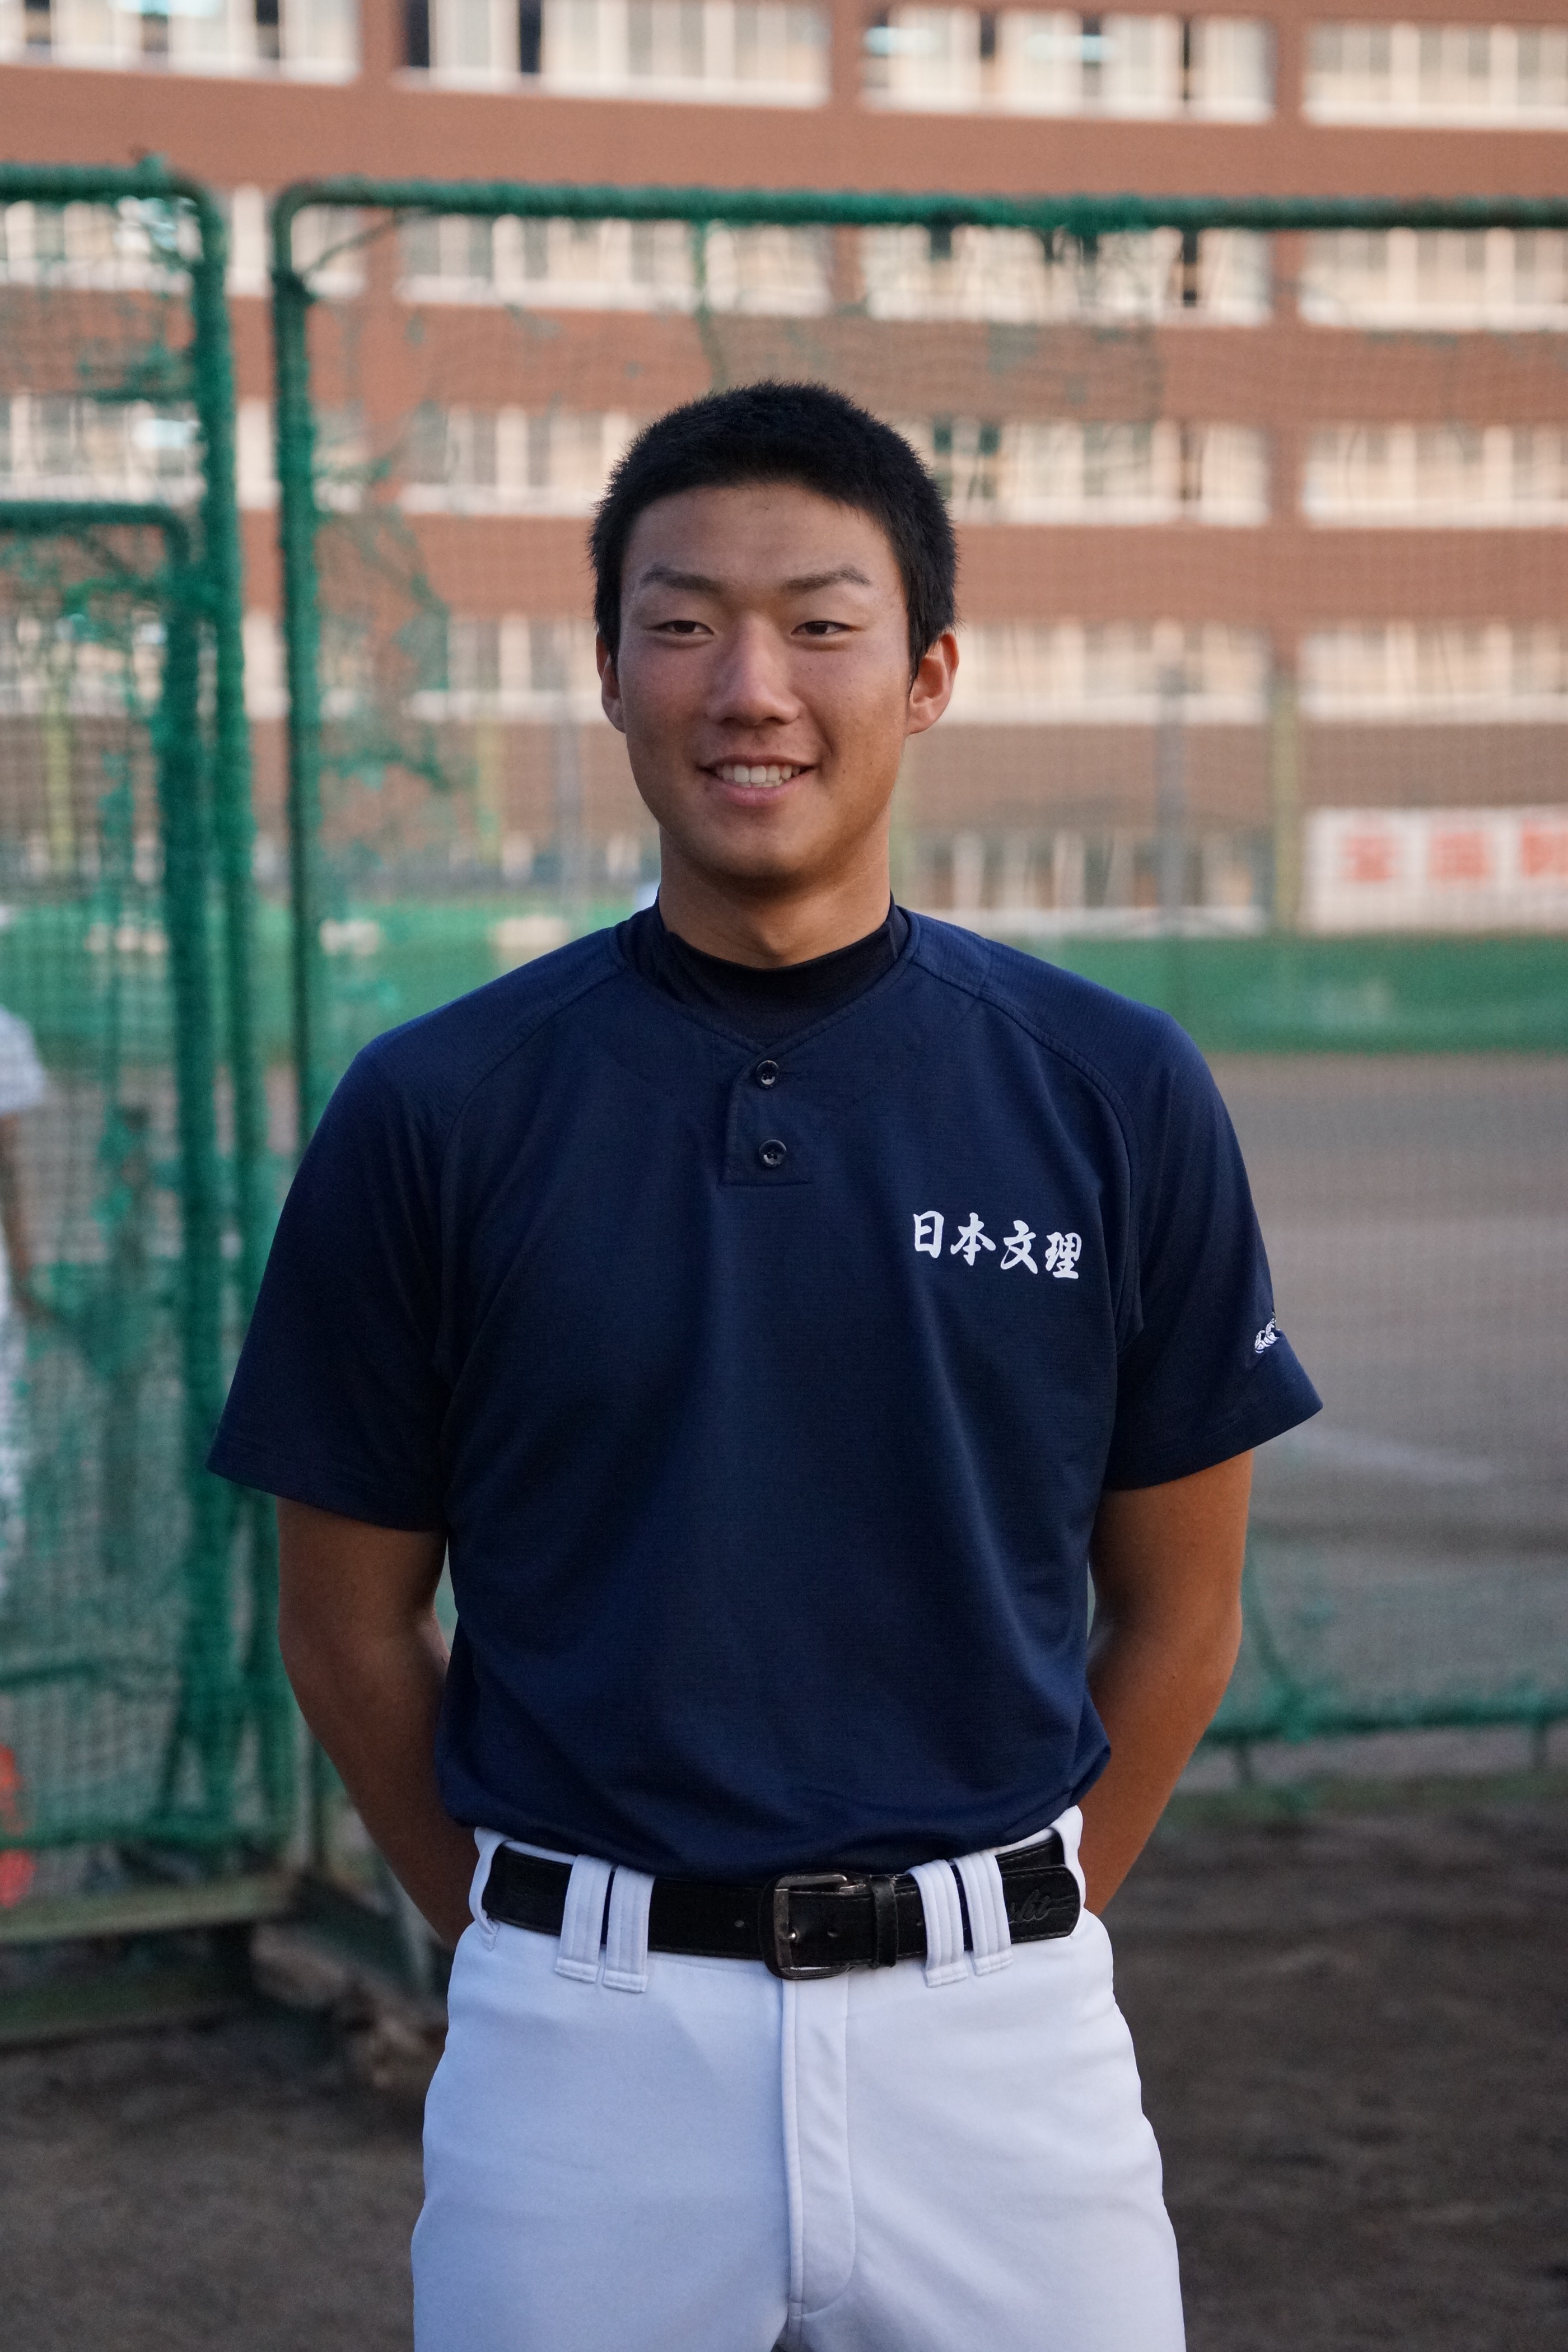 高校野球 日本文理 飯塚投手が帰国 また日本代表に選ばれたい 新潟野球ドットコム